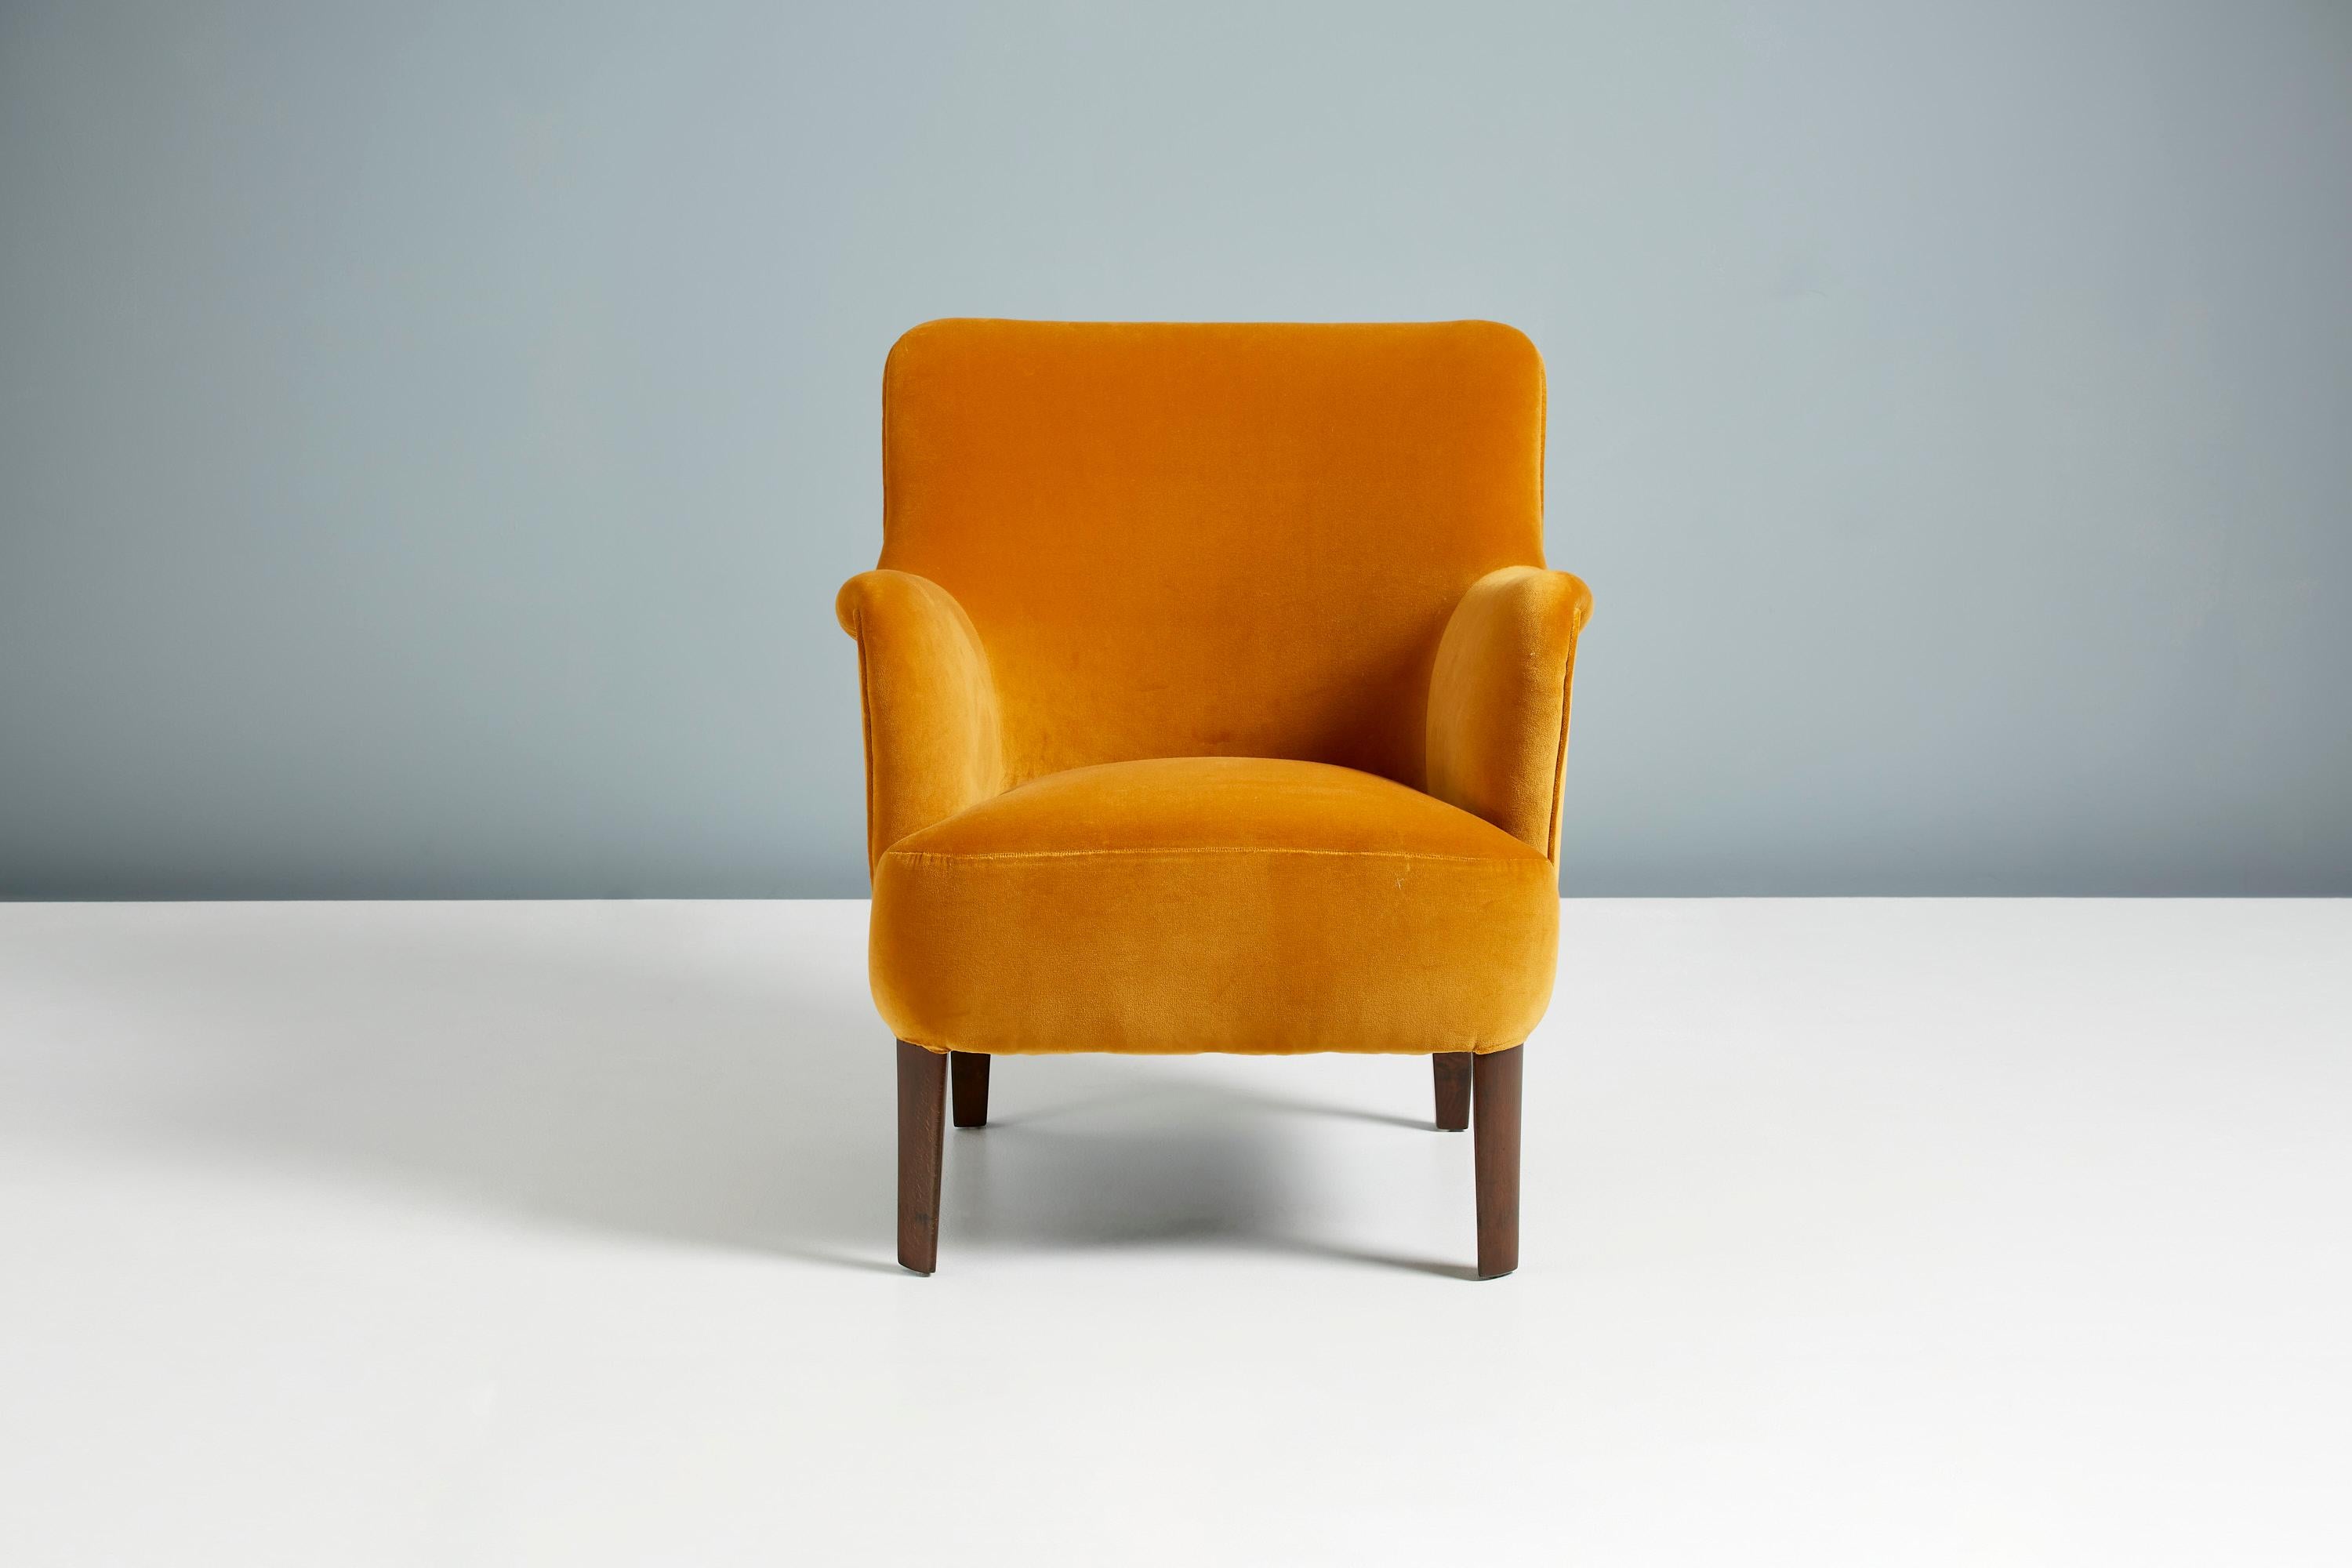 Peter Hvidt

Sessel Modell 1748, ca. 1940er Jahre

Dieser elegante Loungesessel mit niedriger Rückenlehne wurde in den späten 1940er Jahren von Fritz Hansen in Dänemark von dem Meisterdesigner Peter Hvidt hergestellt. Die Buchenholzbeine wurden